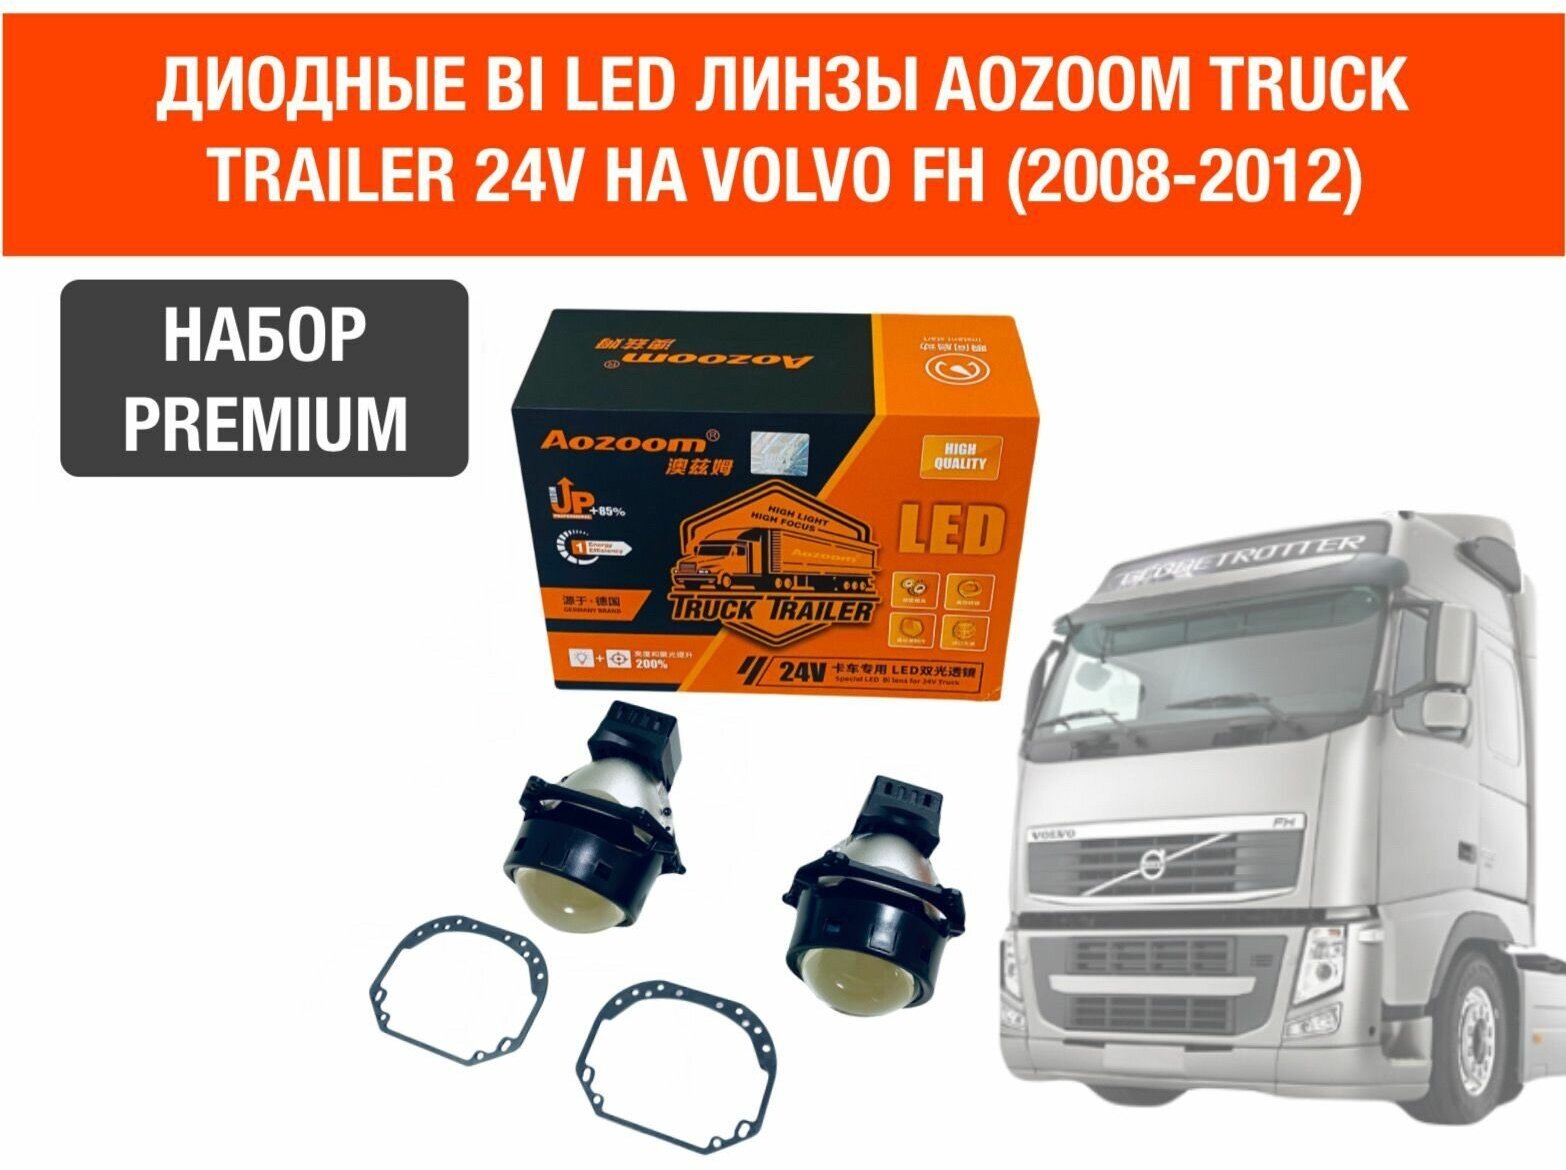 Комплект для установки би лед линз Aozoom Bi Led Truck Trailer 24V, 5500K, 3.0" на VOLVO FH (2008 2012)